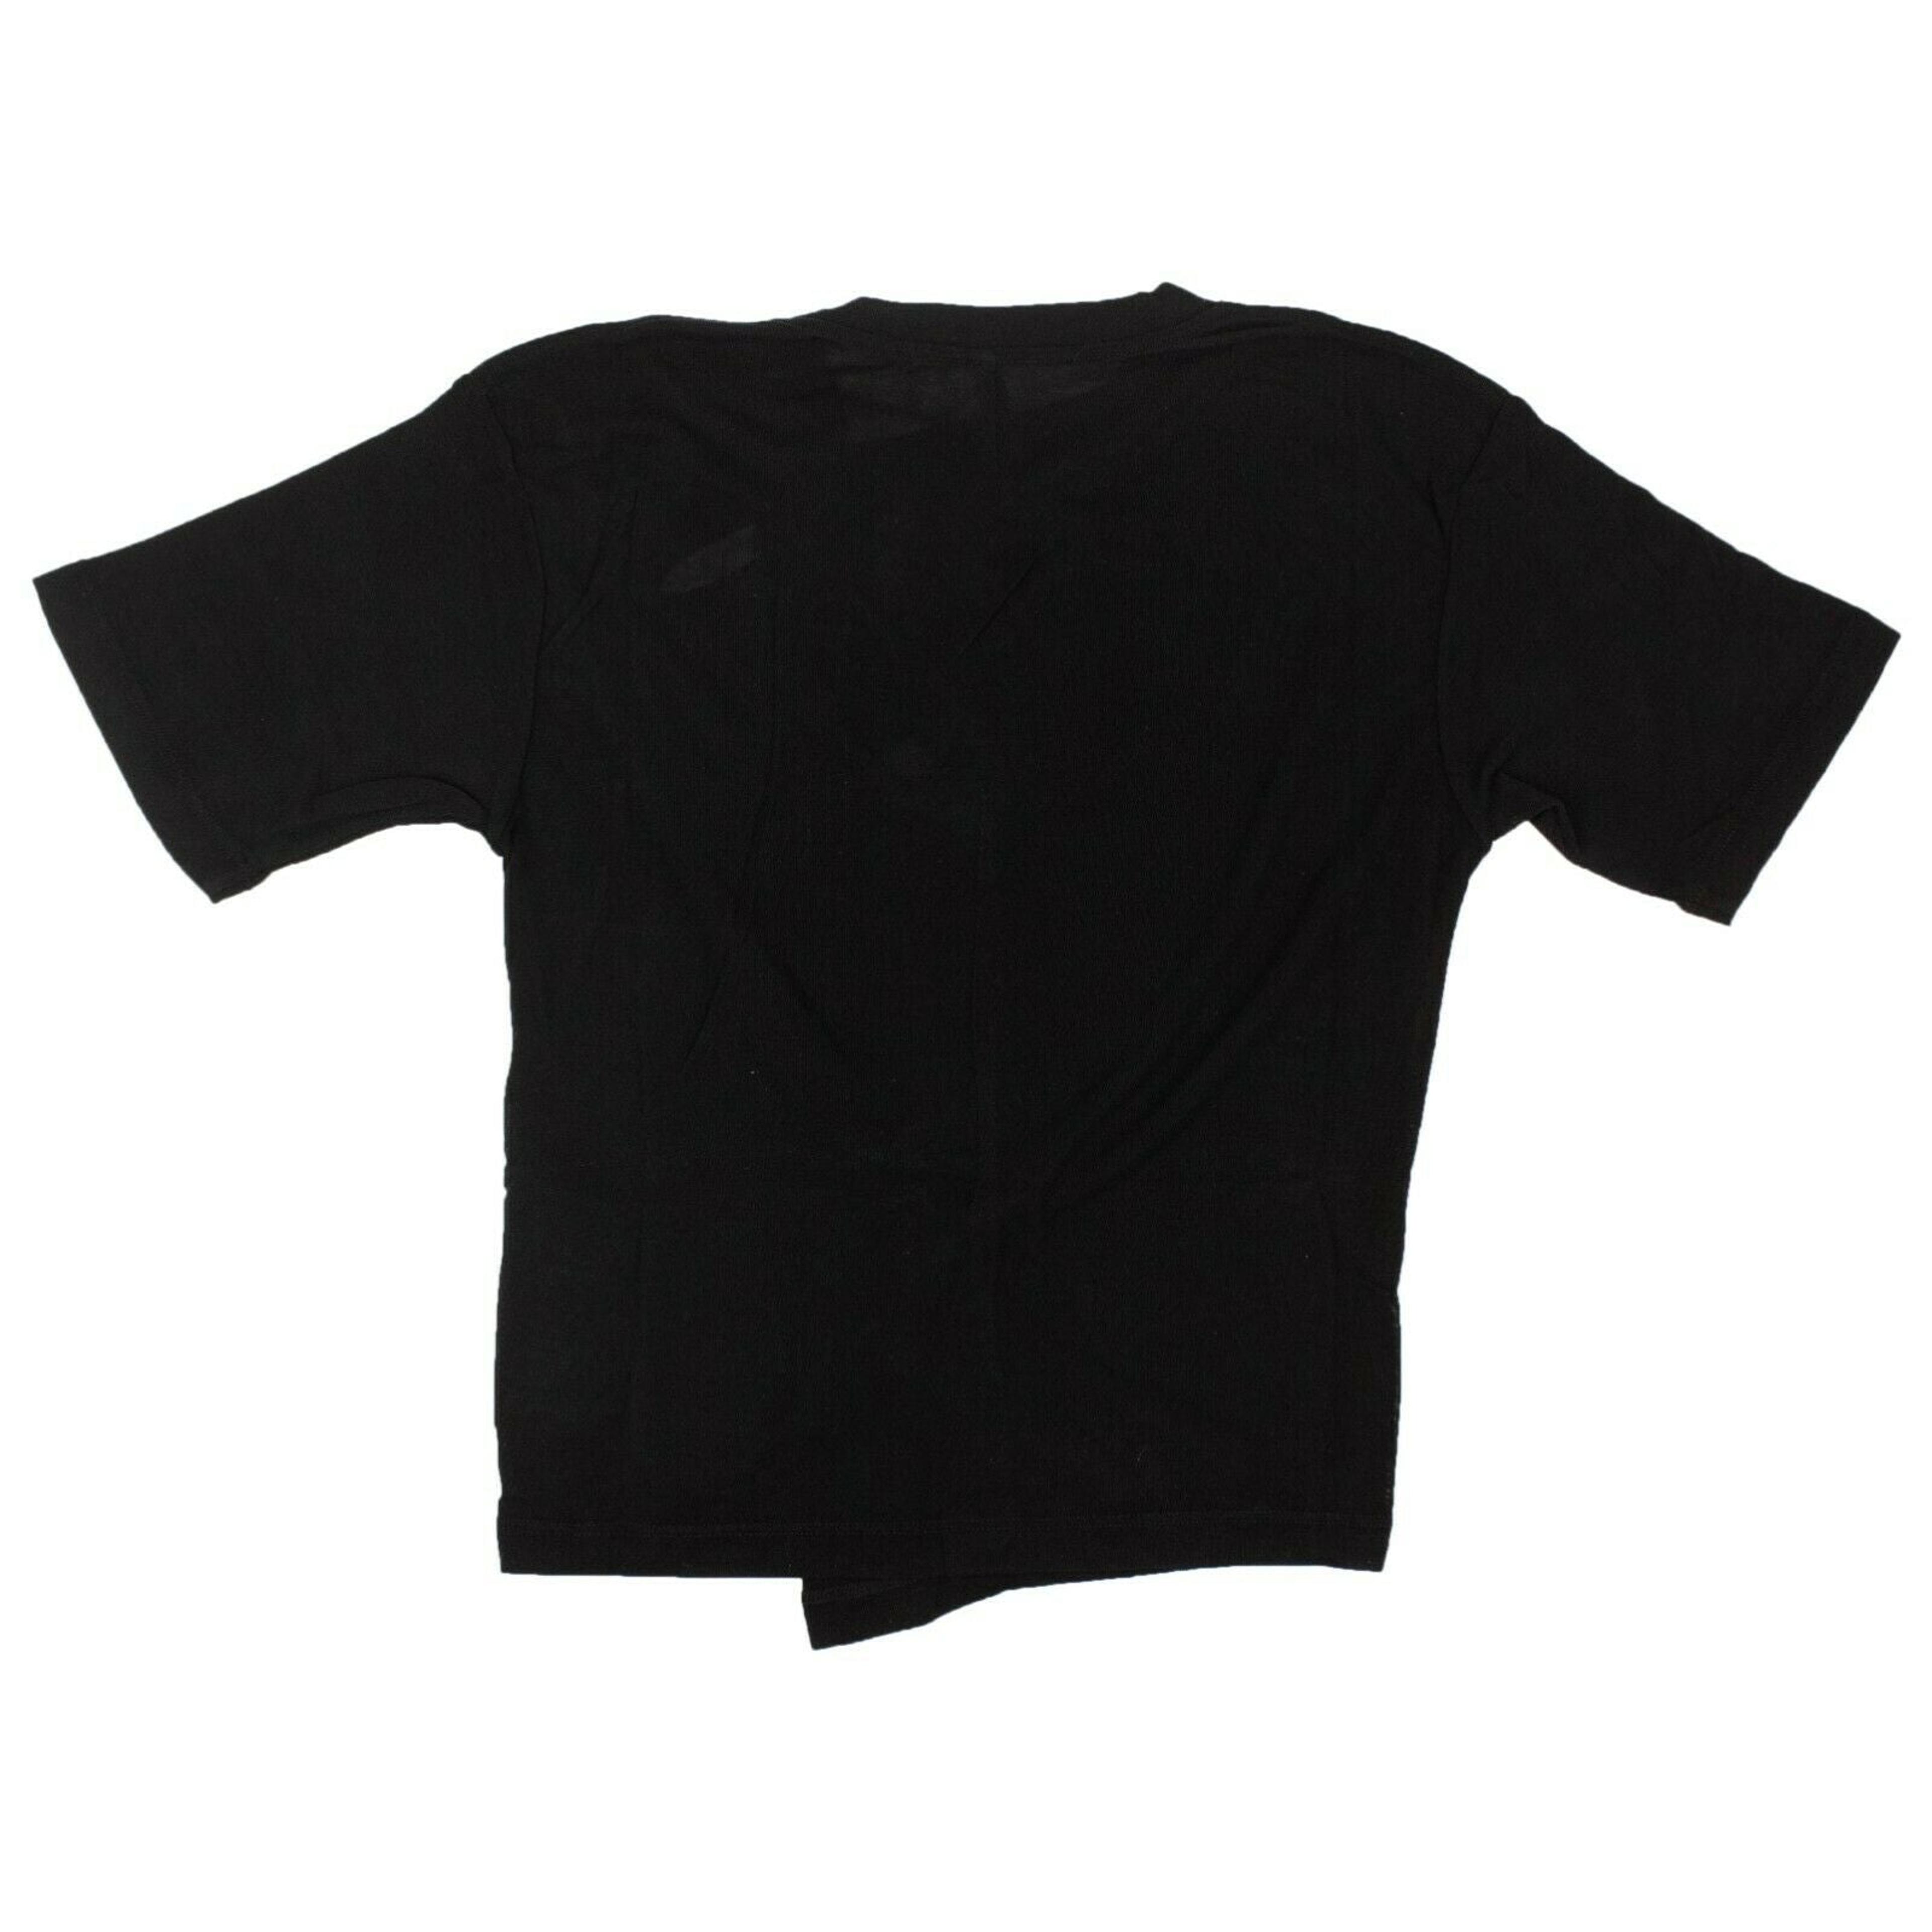 Alternate View 3 of Black Silk Pintuck T-Shirt